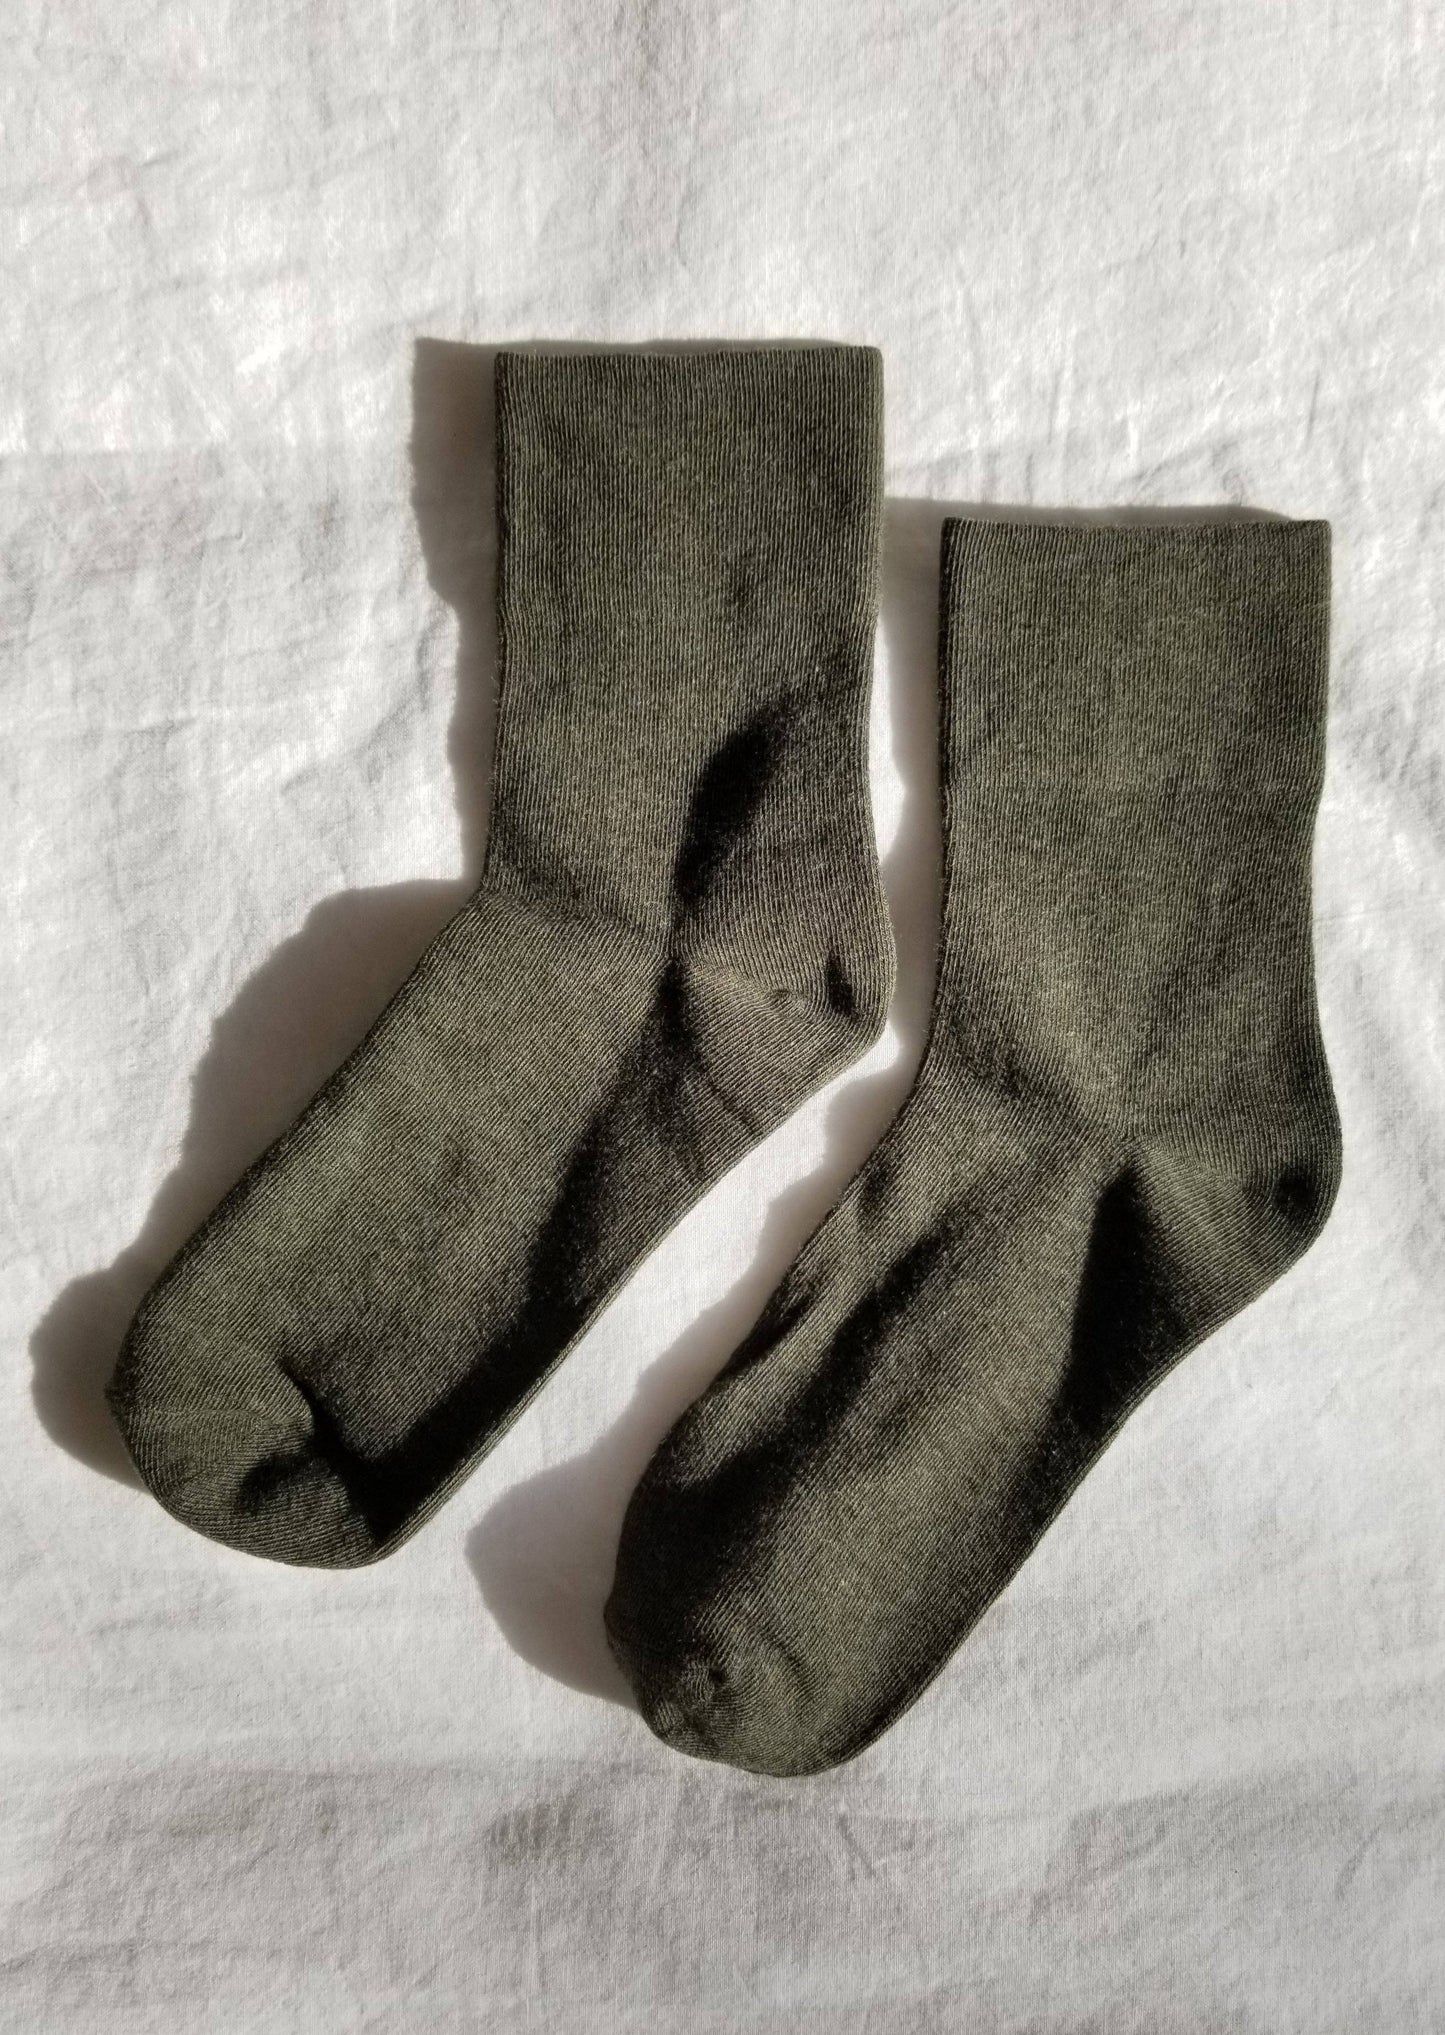 Sneaker Socks | Olive